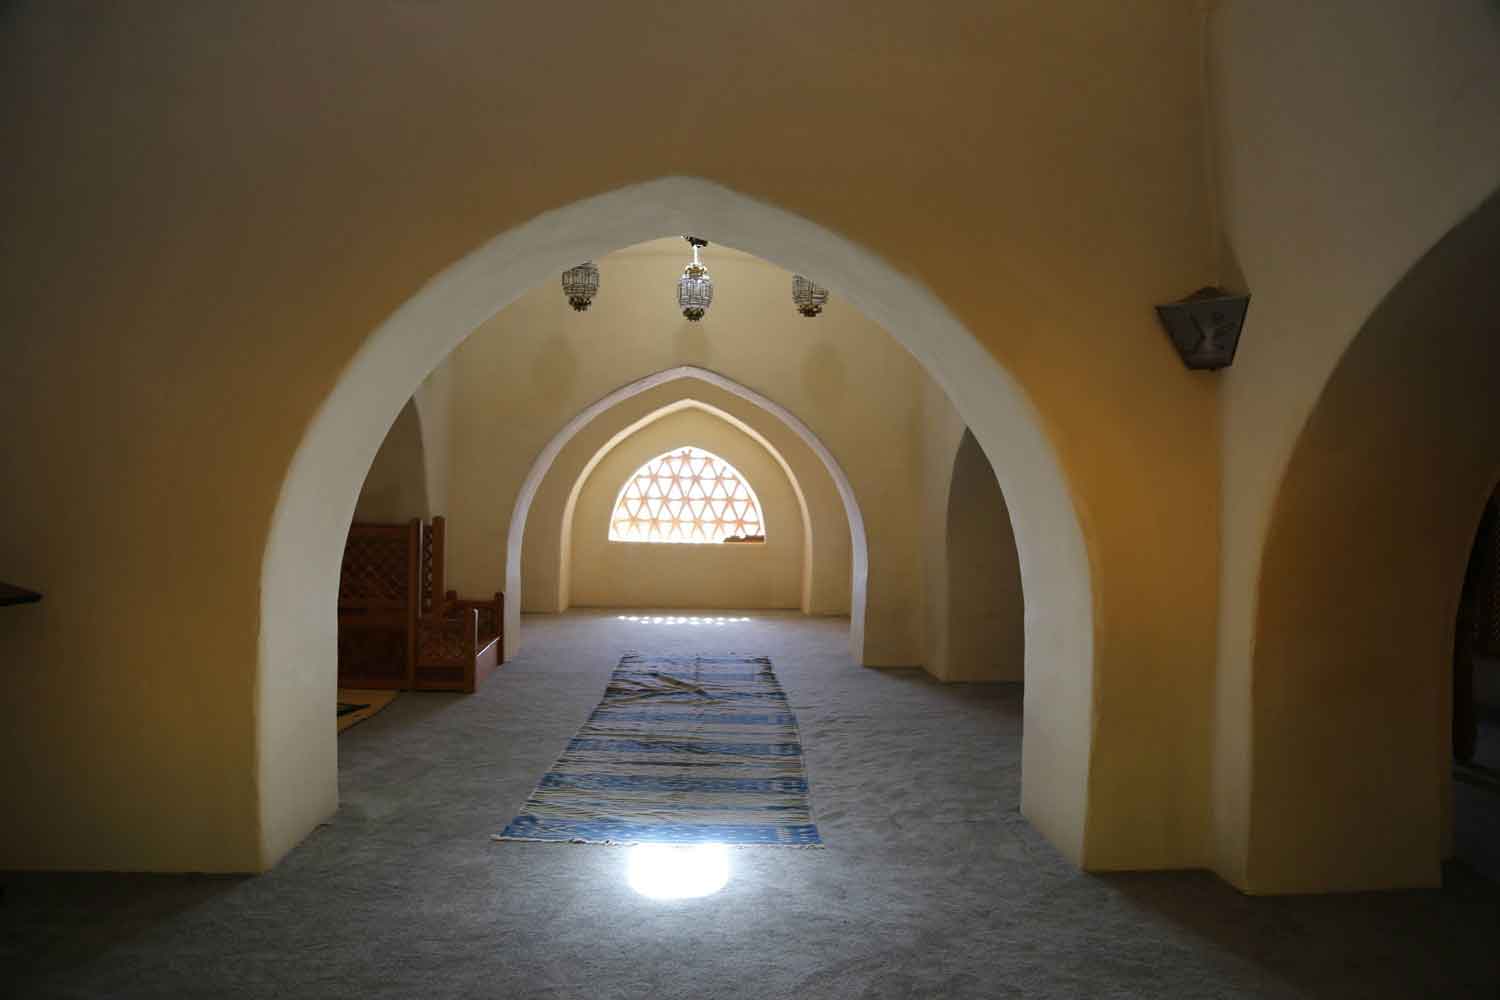  Dar al-Islam  Abiquiu, United States